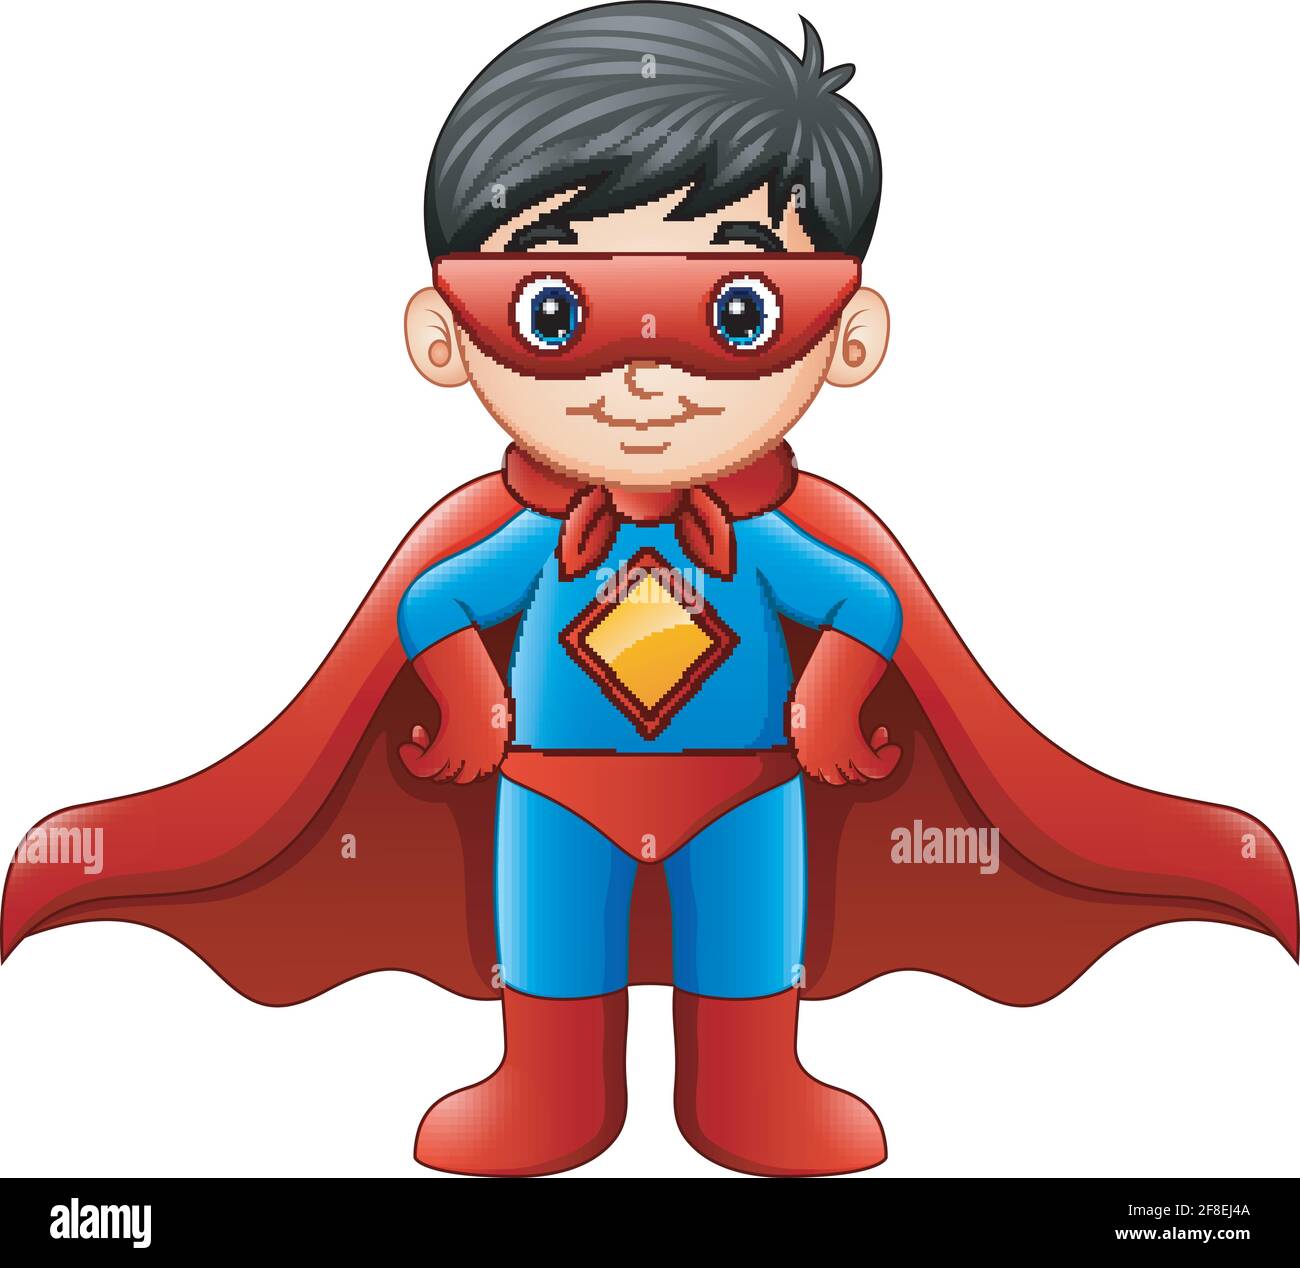 29,209 imágenes, fotos de stock, objetos en 3D y vectores sobre Niño con  capa de superheroe